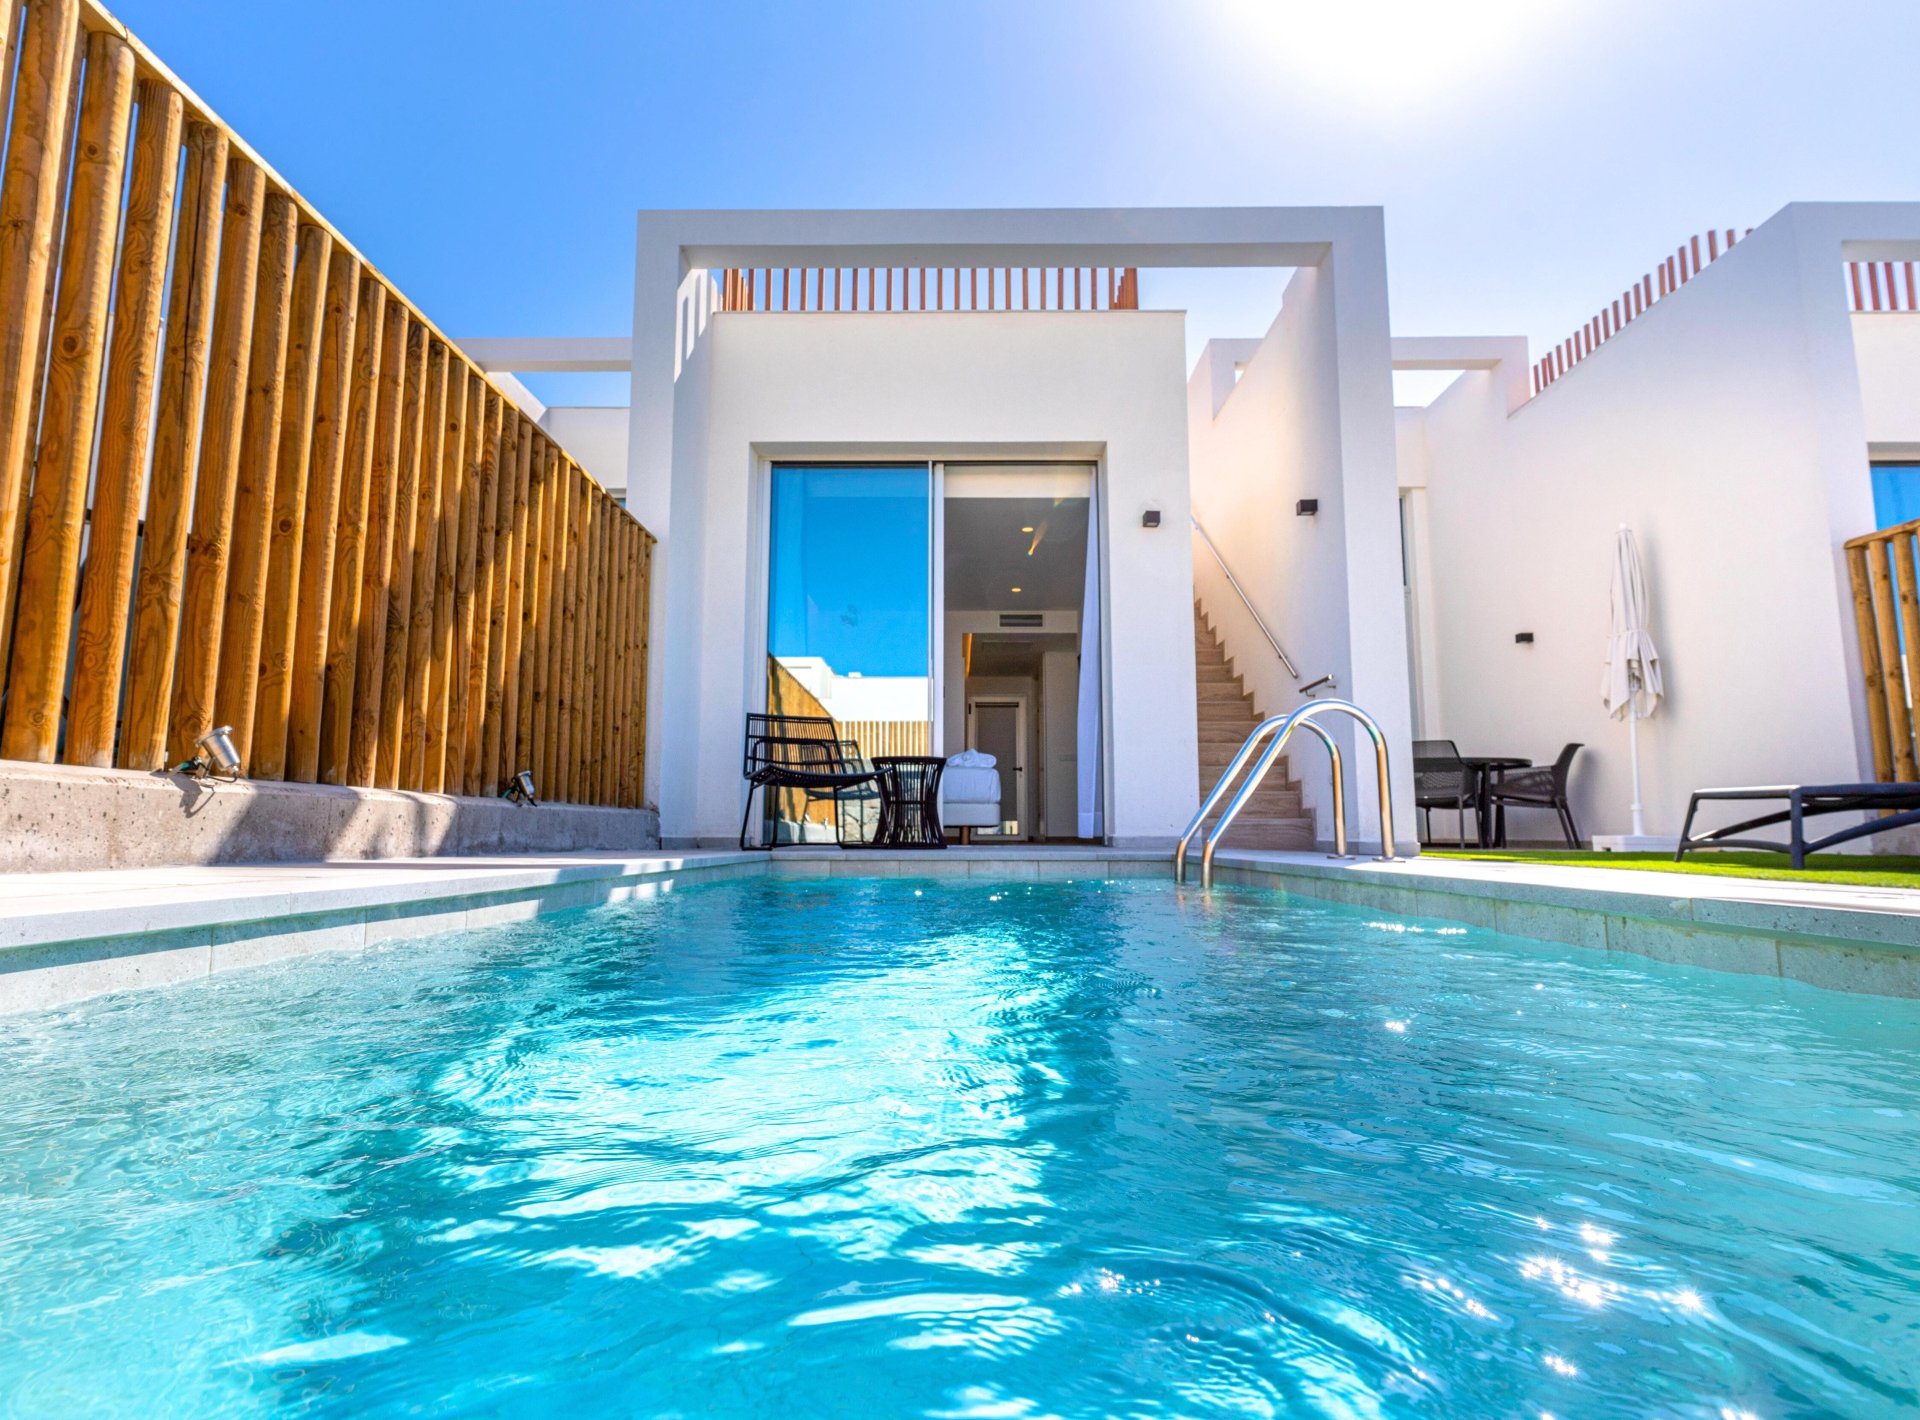 ISholidays Santa Agueda, Casa 2 dormitorios Deluxe, piscina privada.